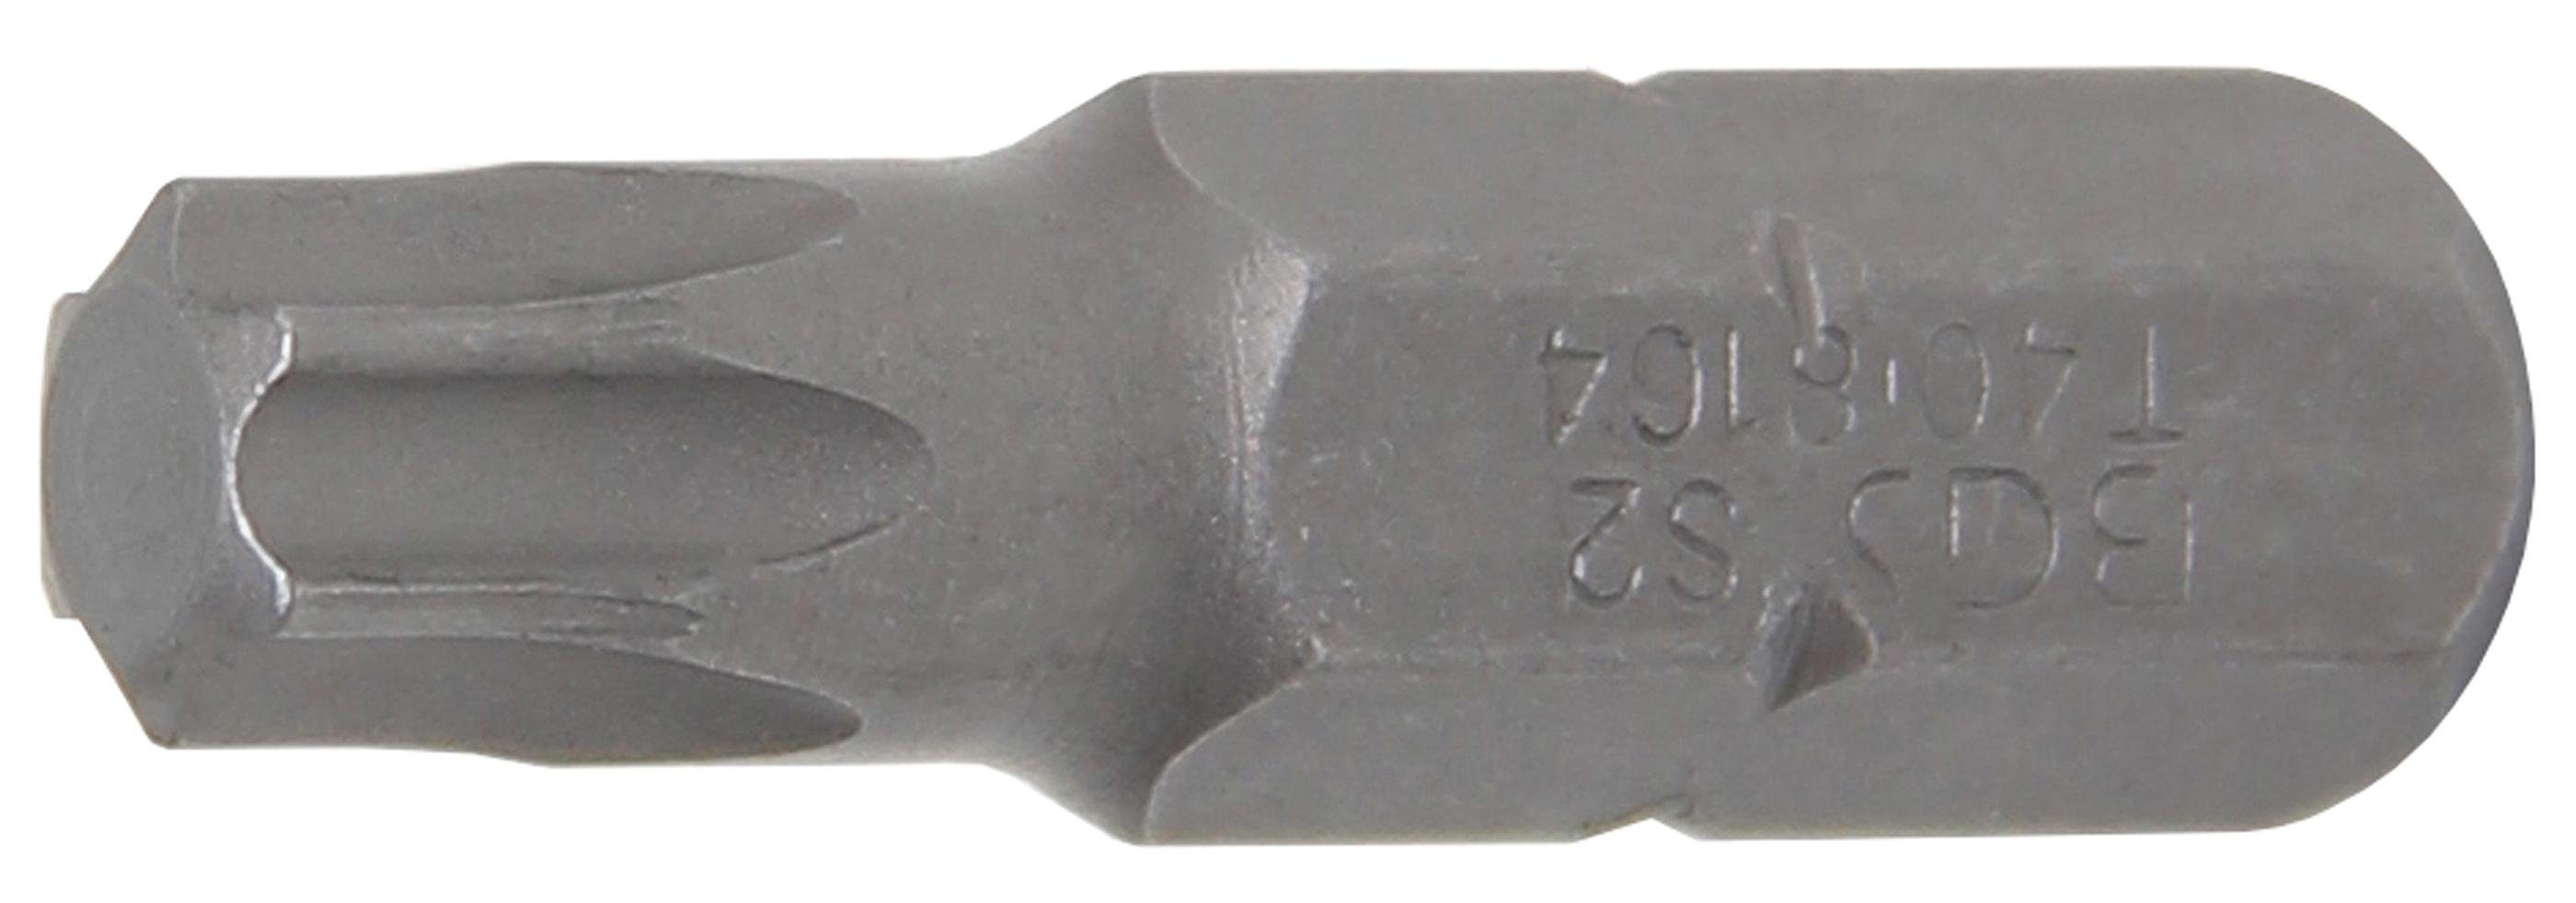 BGS technic Bit-Schraubendreher Bit, Antrieb Außensechskant 8 mm (5/16), T-Profil (für Torx) T40